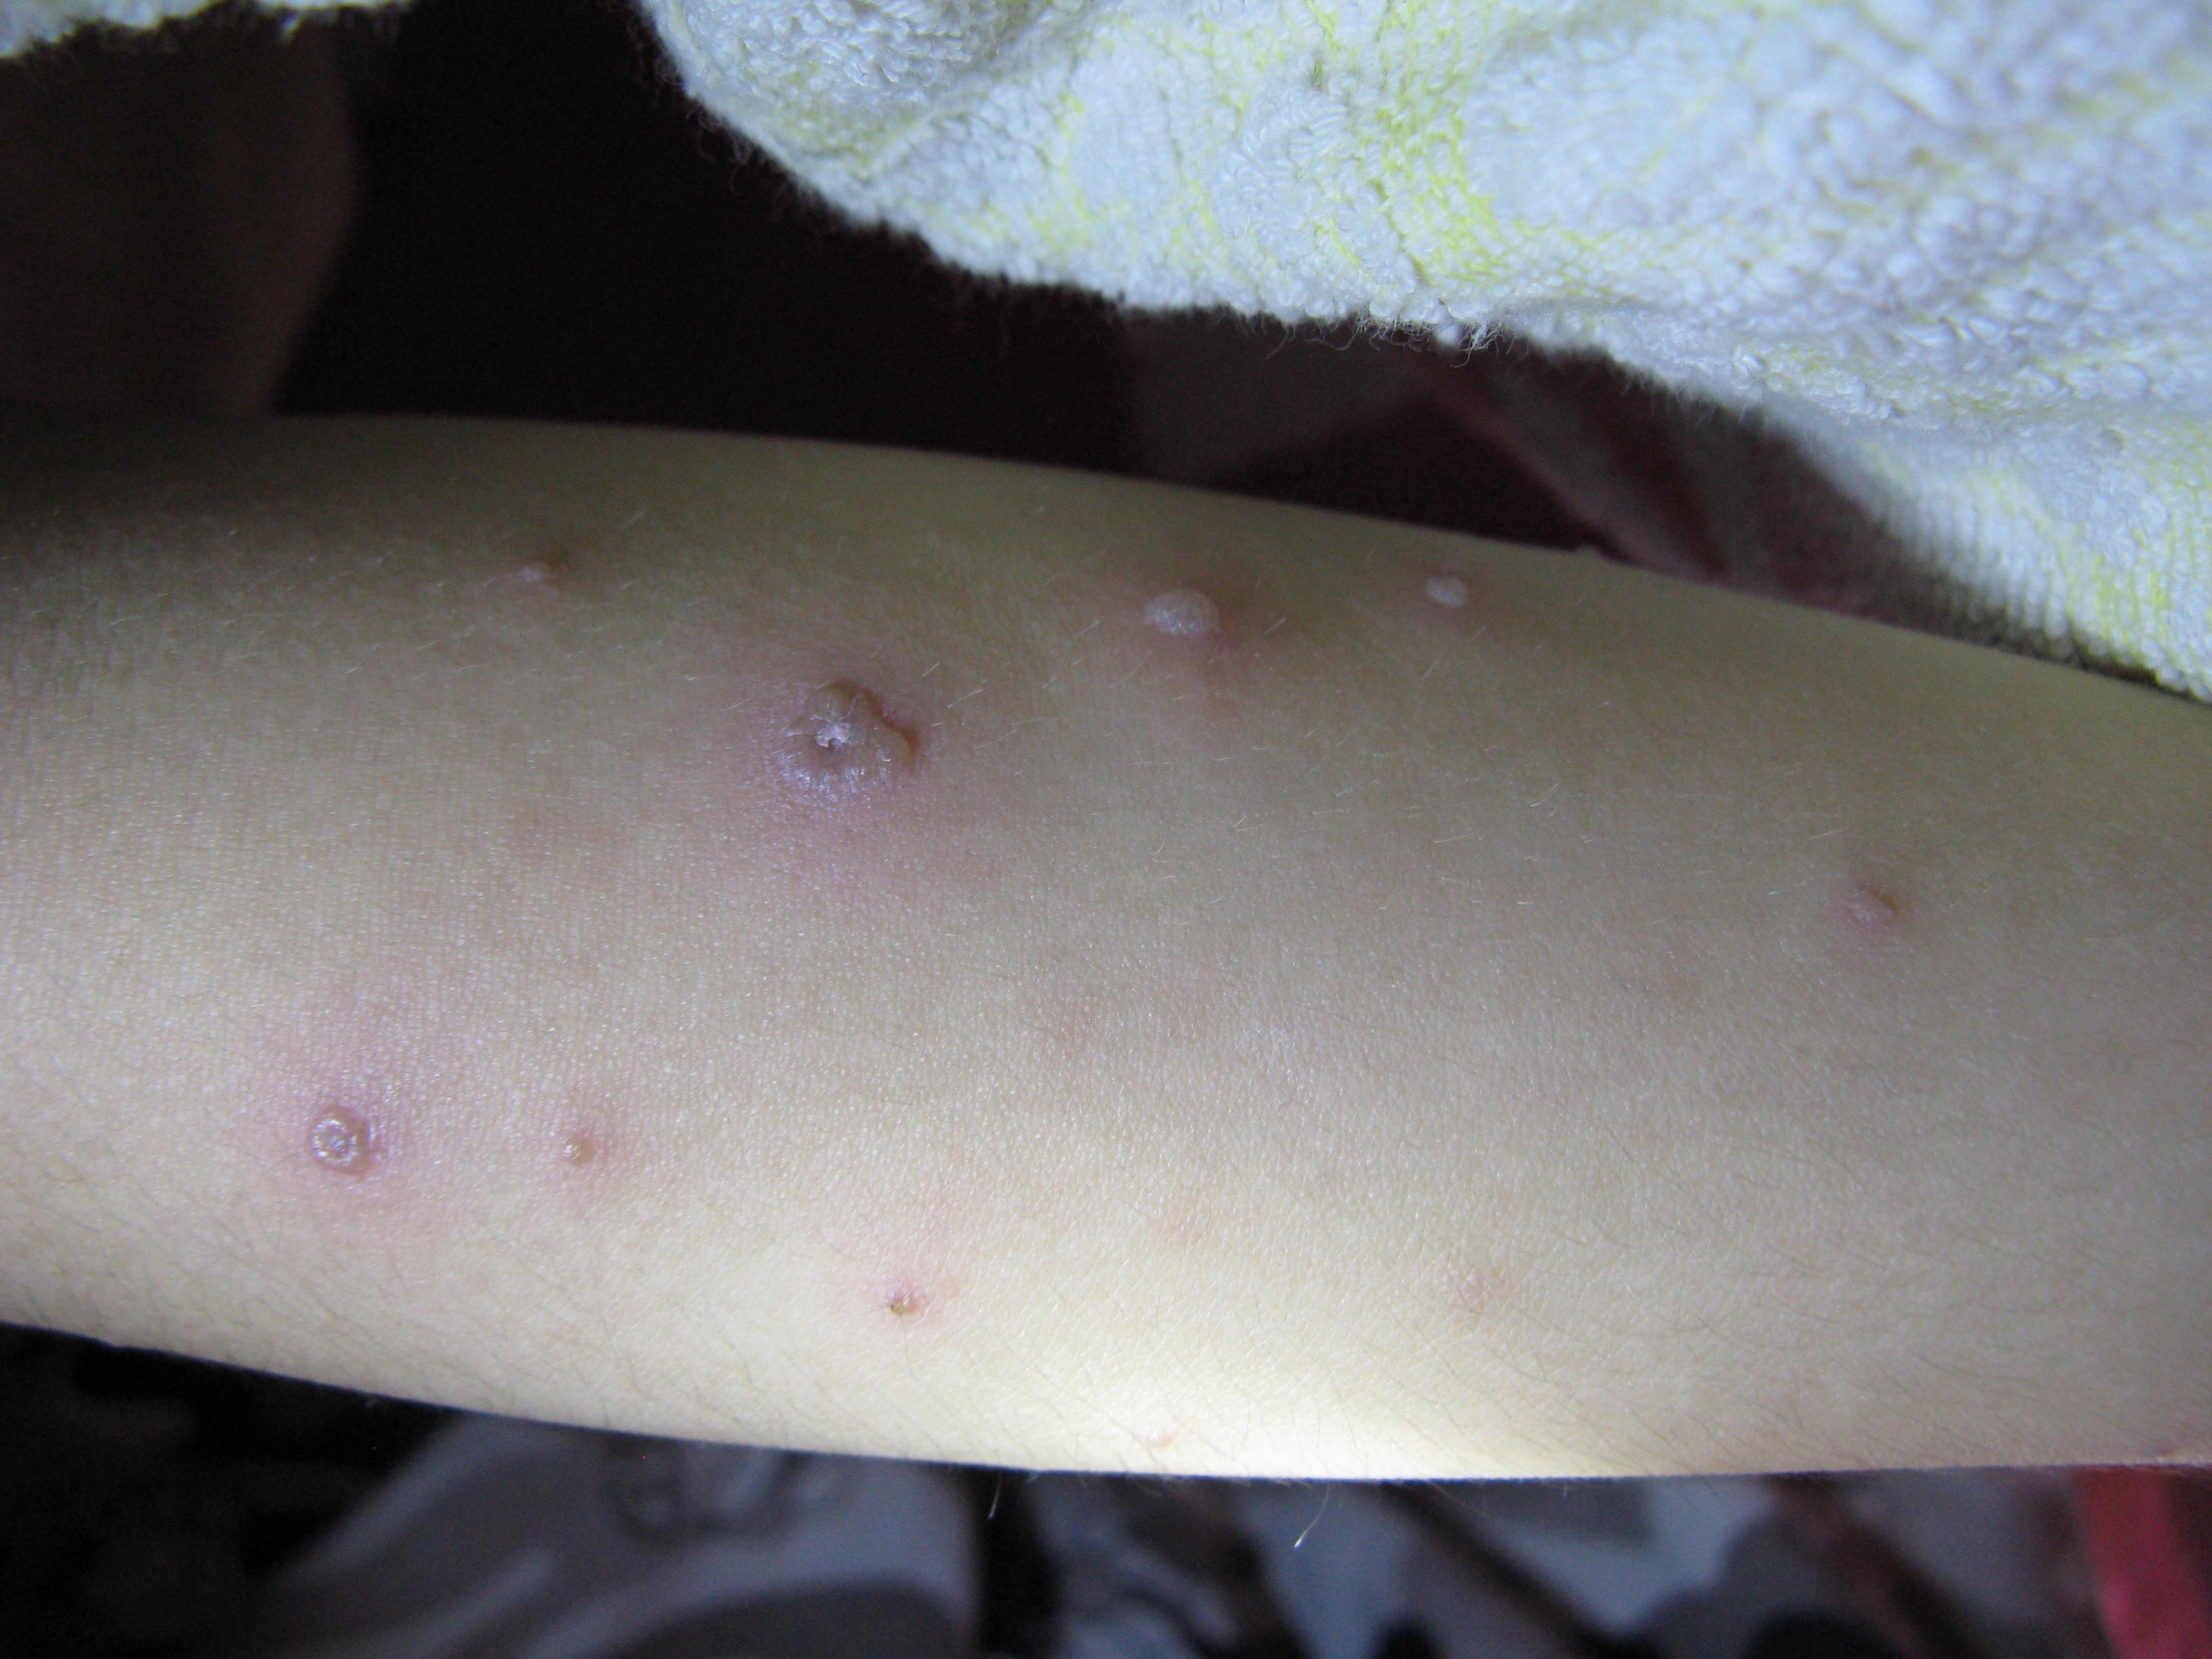 红斑丘疹的症状图片图片